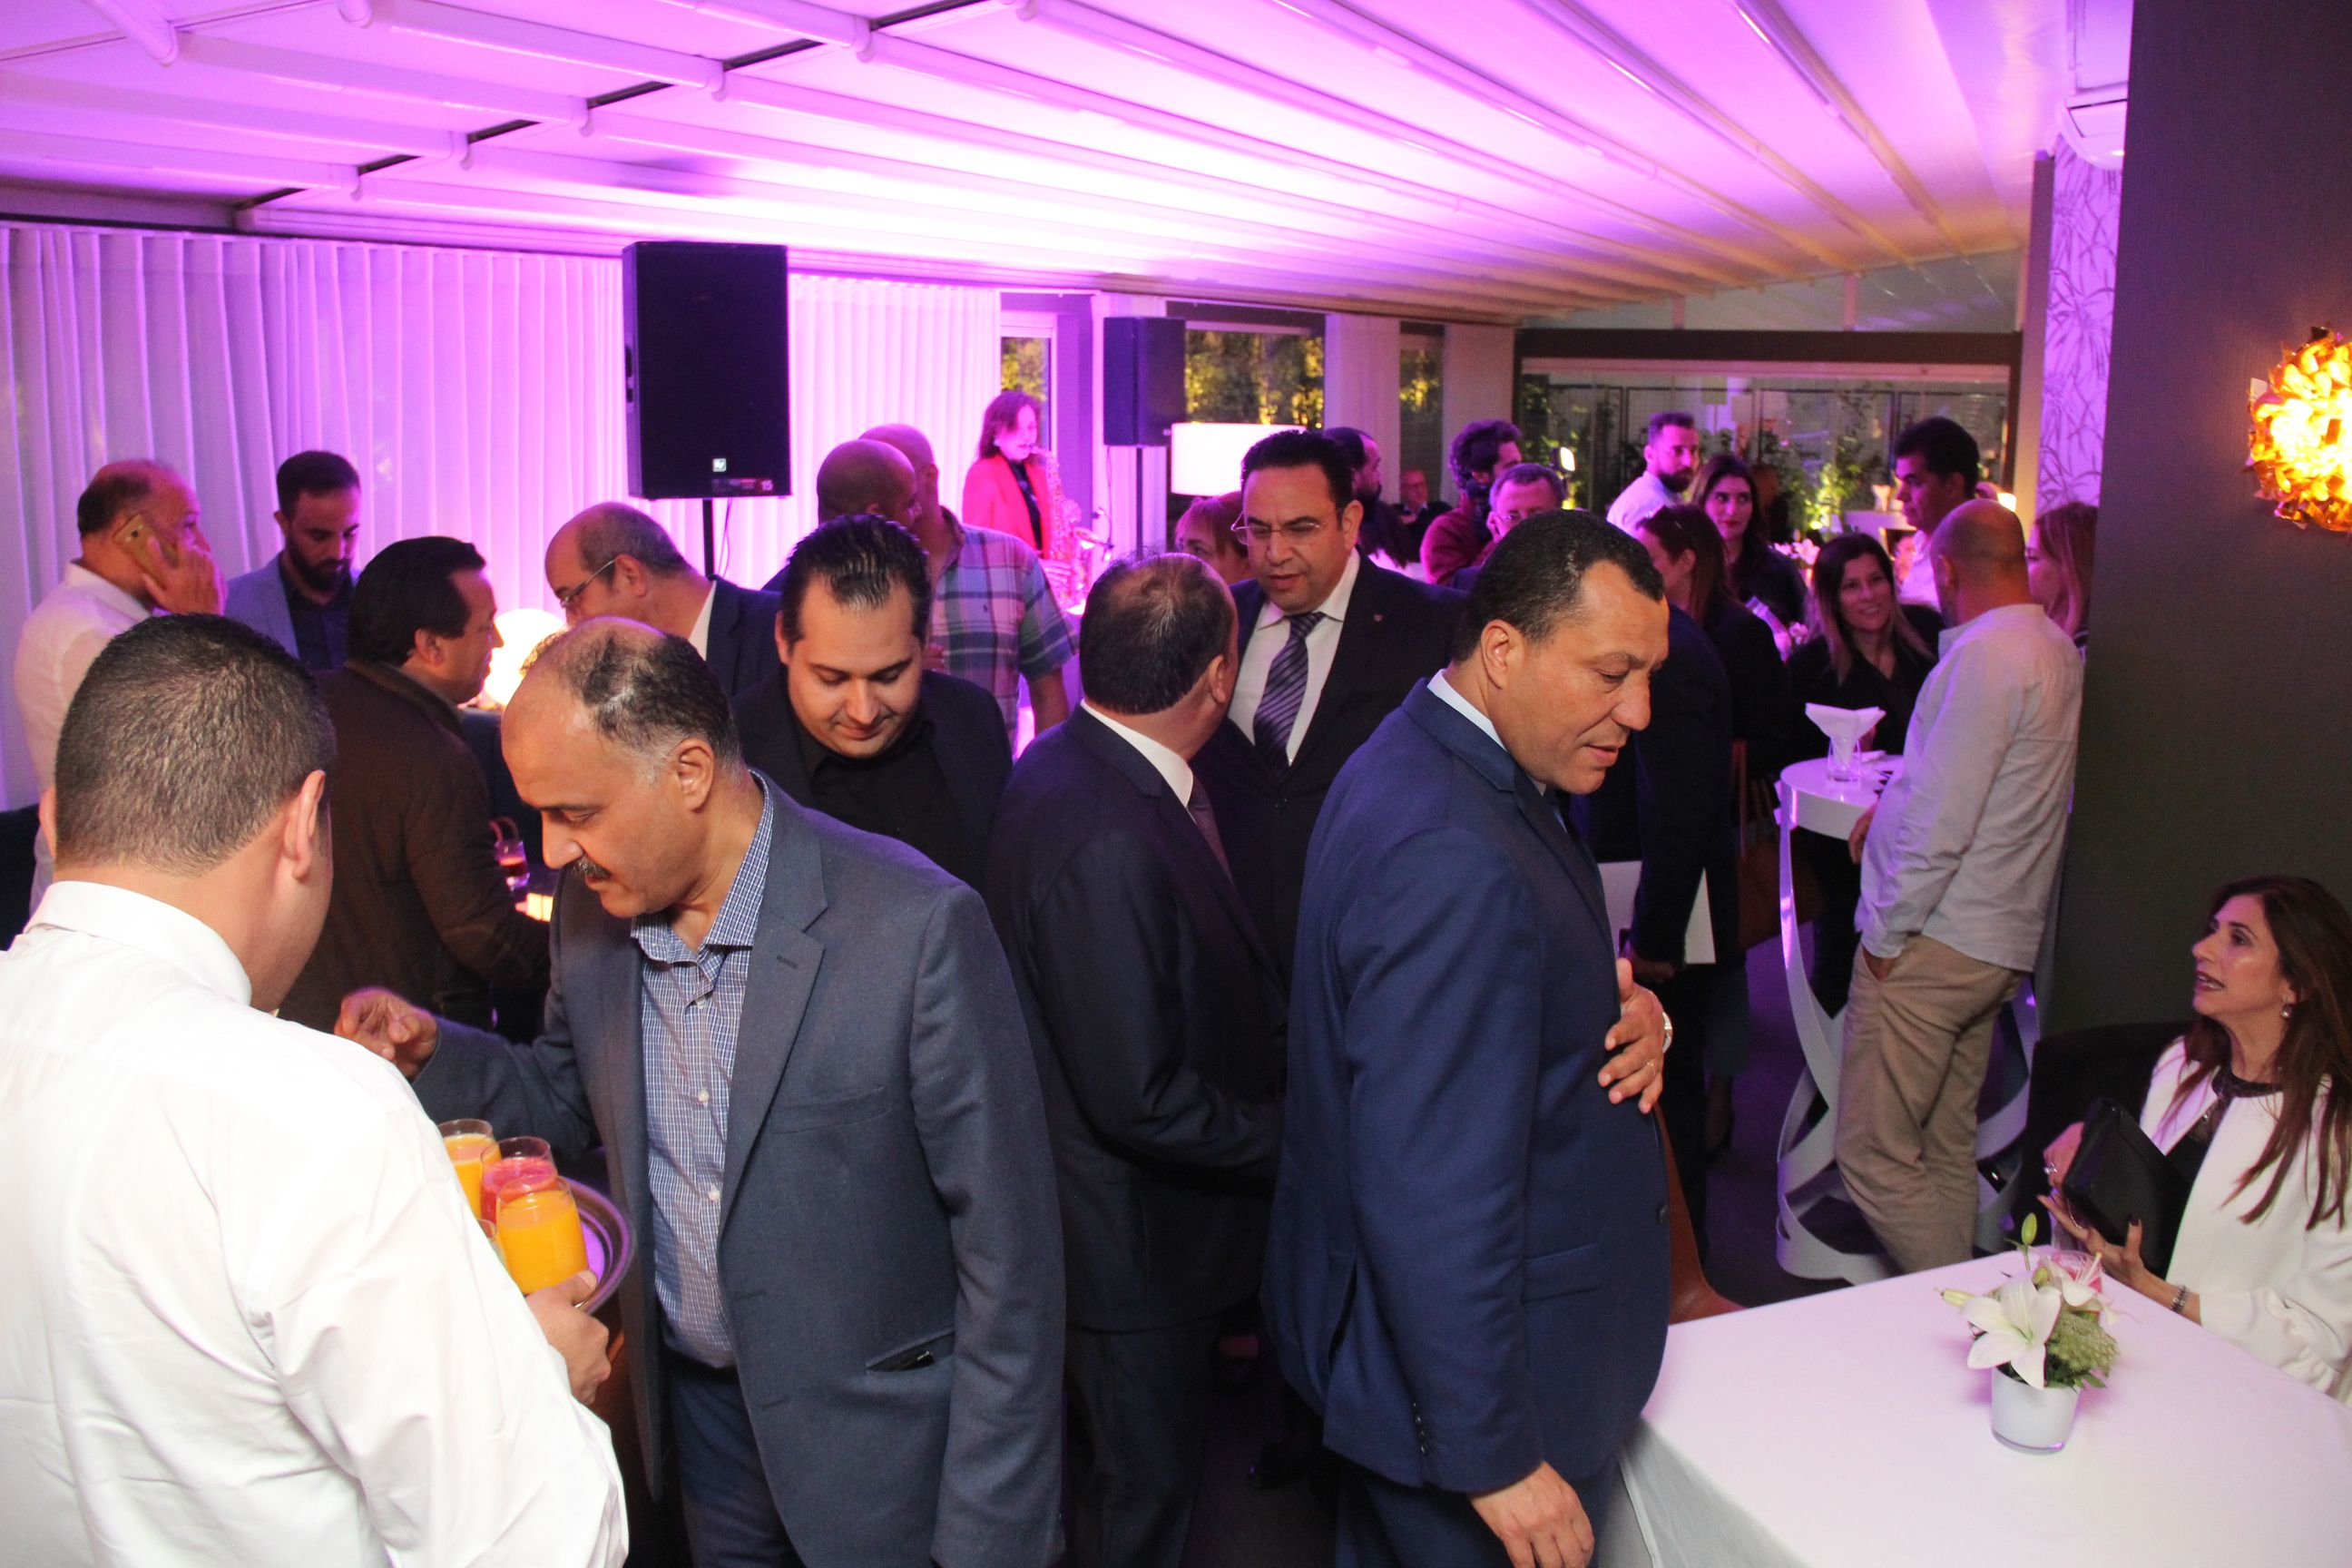 L’Inauguration s’est déroulée en présence du ministre du tourisme René Trabelsi, de la maire de Tunis Souad Abderrahim, ainsi que de nombreux députés et invités. 